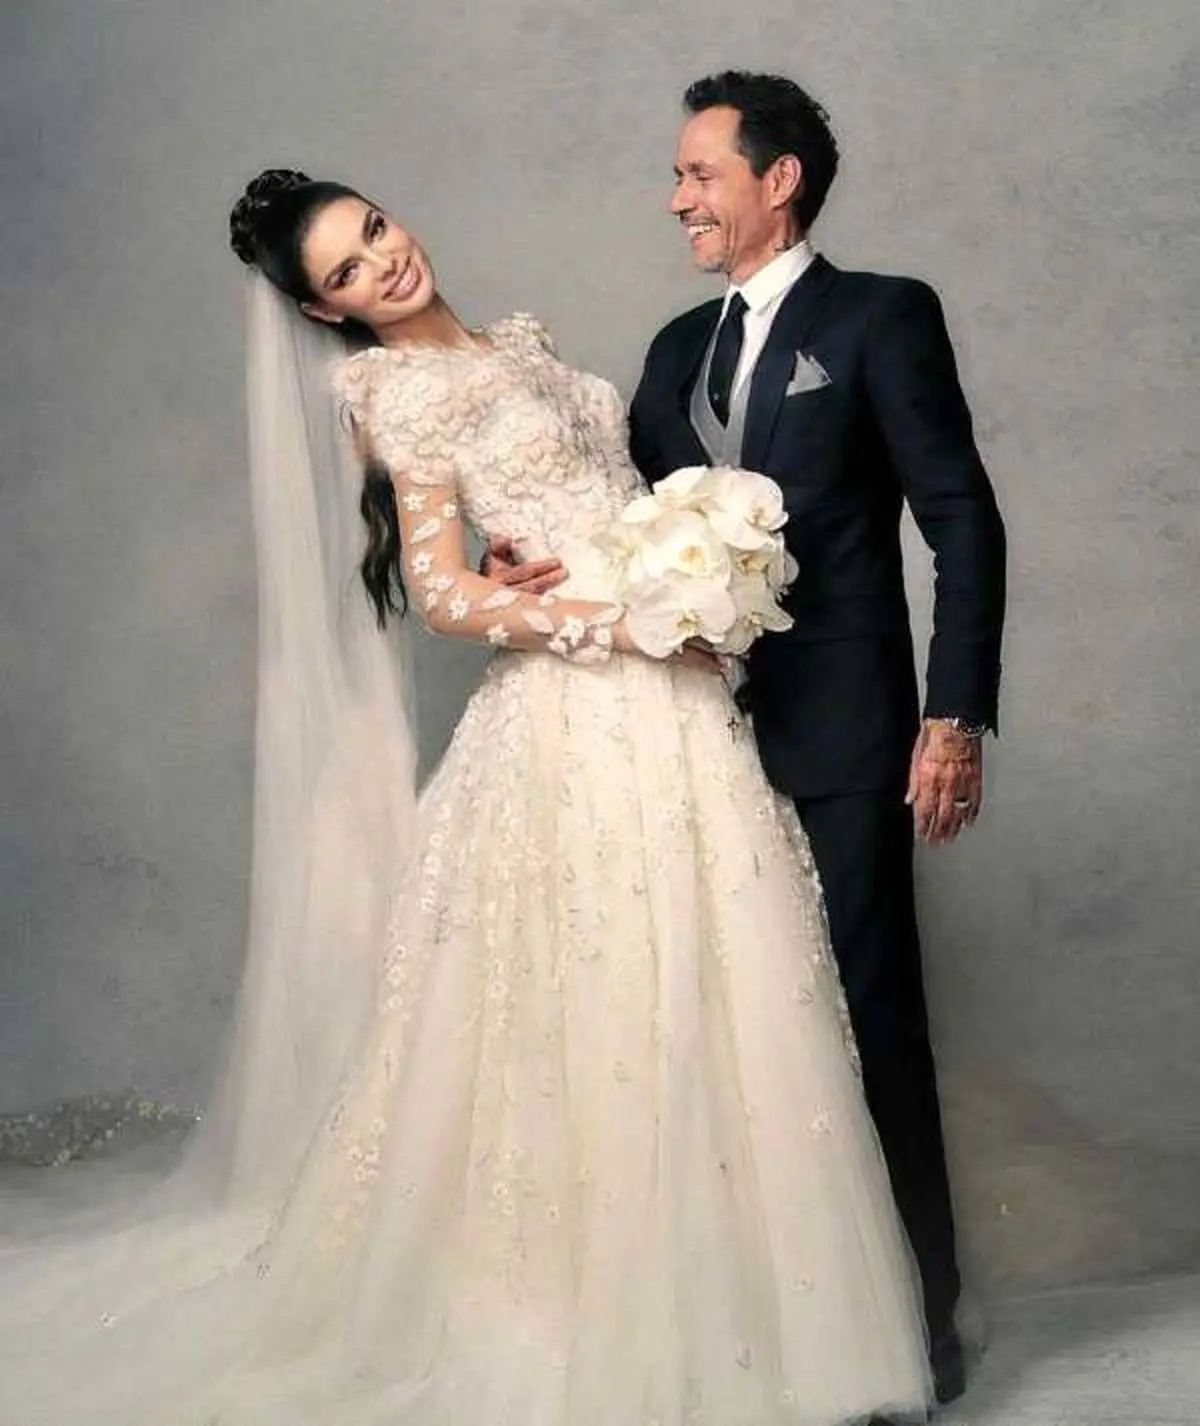 چهارمین عروسی رویایی “خواننده معروف” با همسر 31 سال کوچکتر/ تصاویر